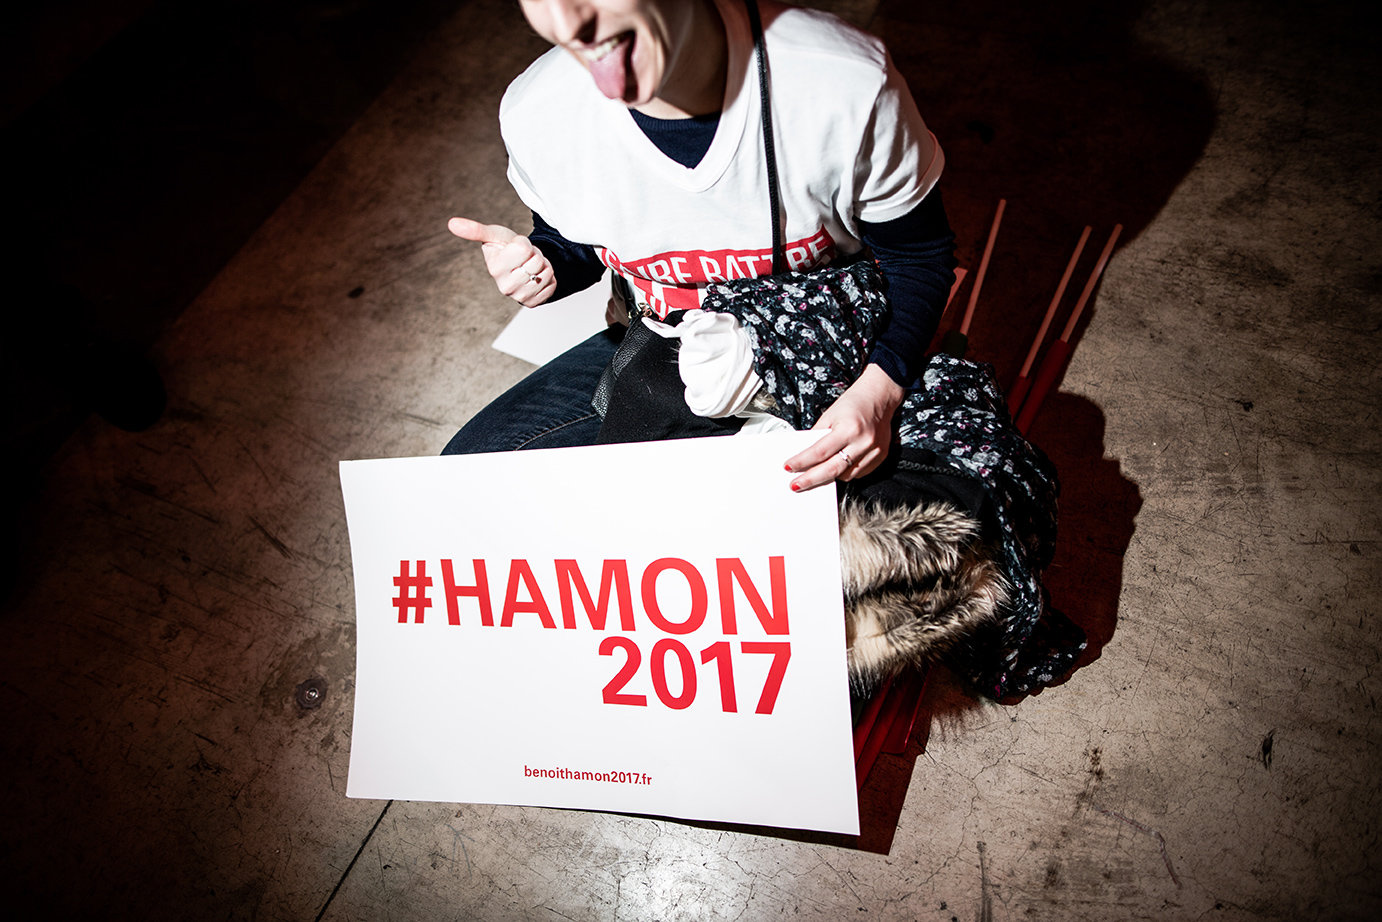 Anhänger des französischen Präsidentschaftskandidaten Benoit Hamon mit Plakat (Foto: RGA/REA/laif)